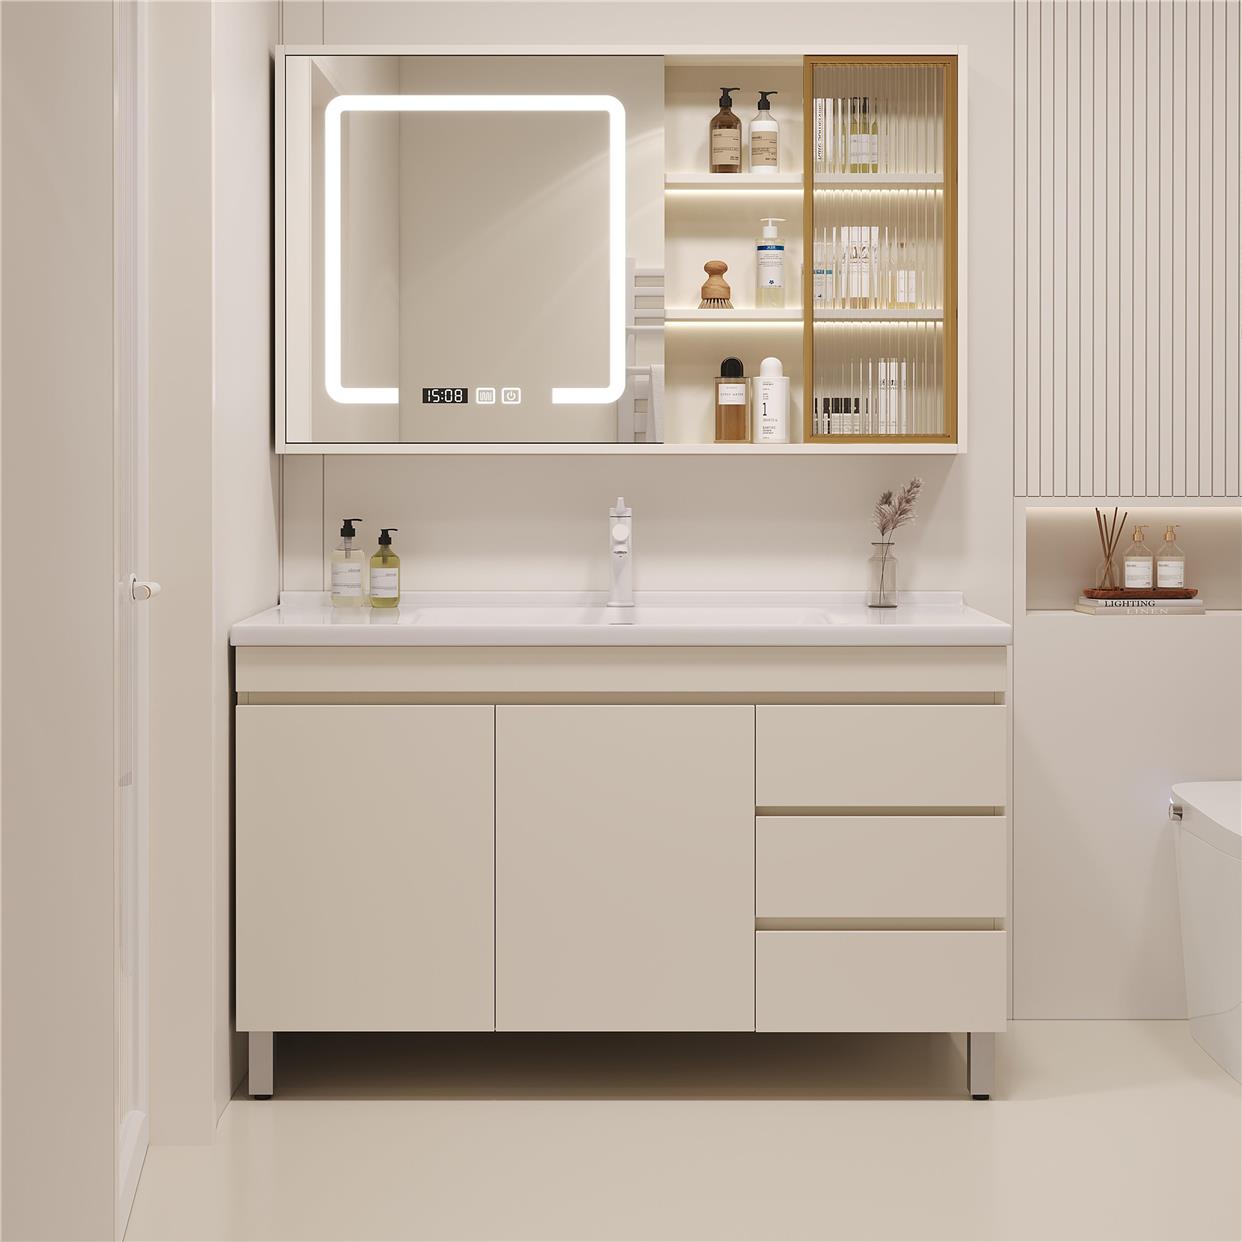 实木浴室柜陶瓷一体盆组合卫生间洗漱台卫浴柜落地式智能镜洗手洗